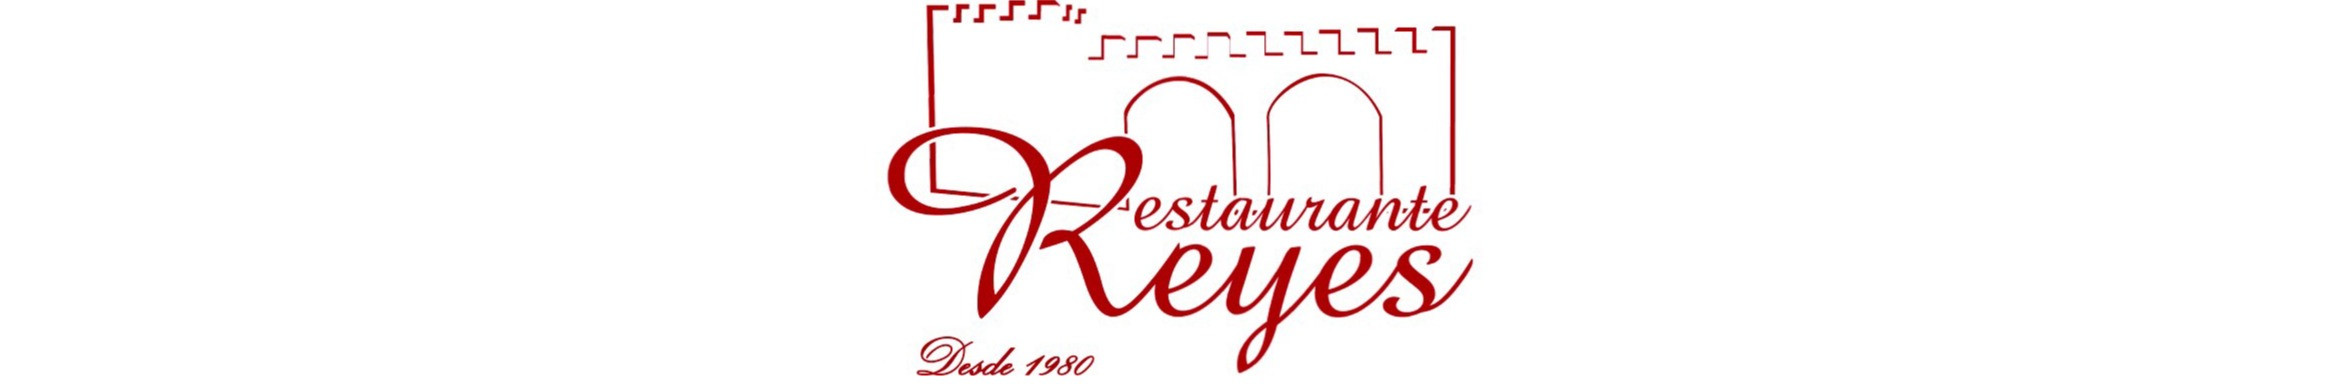 Restaurante Reyes. Expertos en comida casera y tradicional